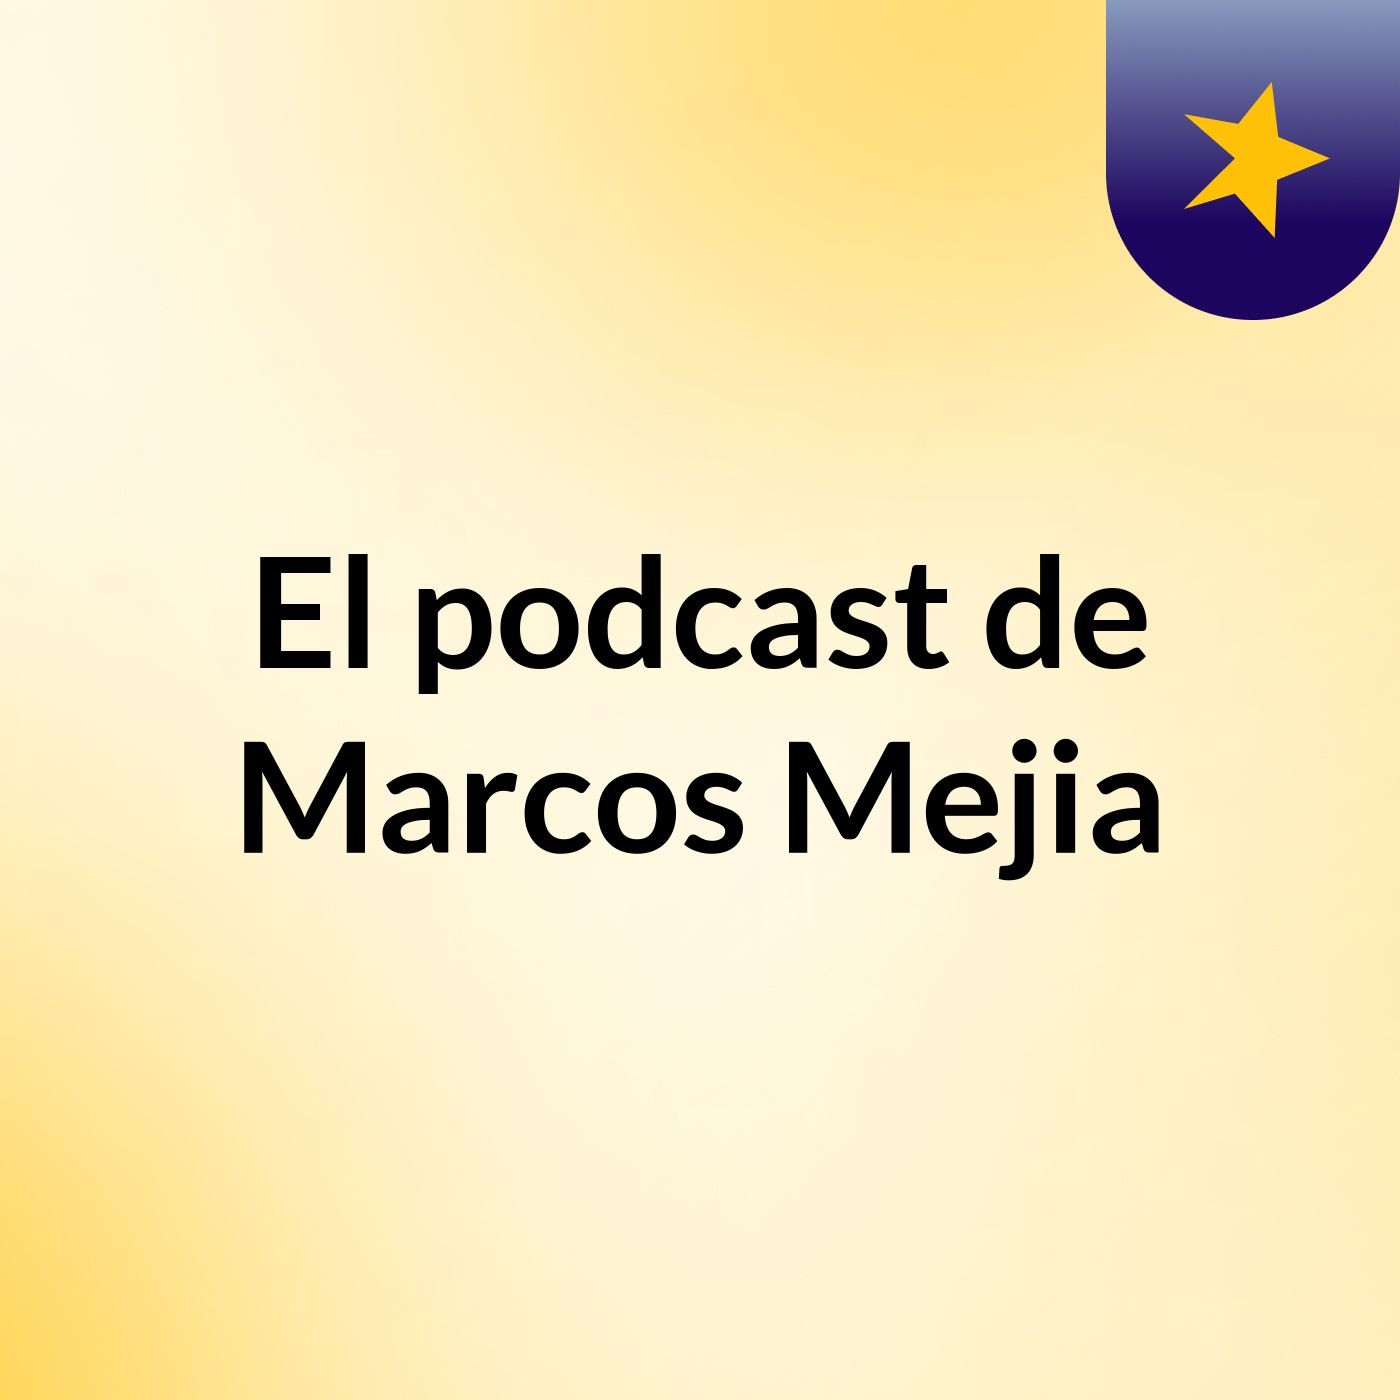 El podcast de Marcos Mejia